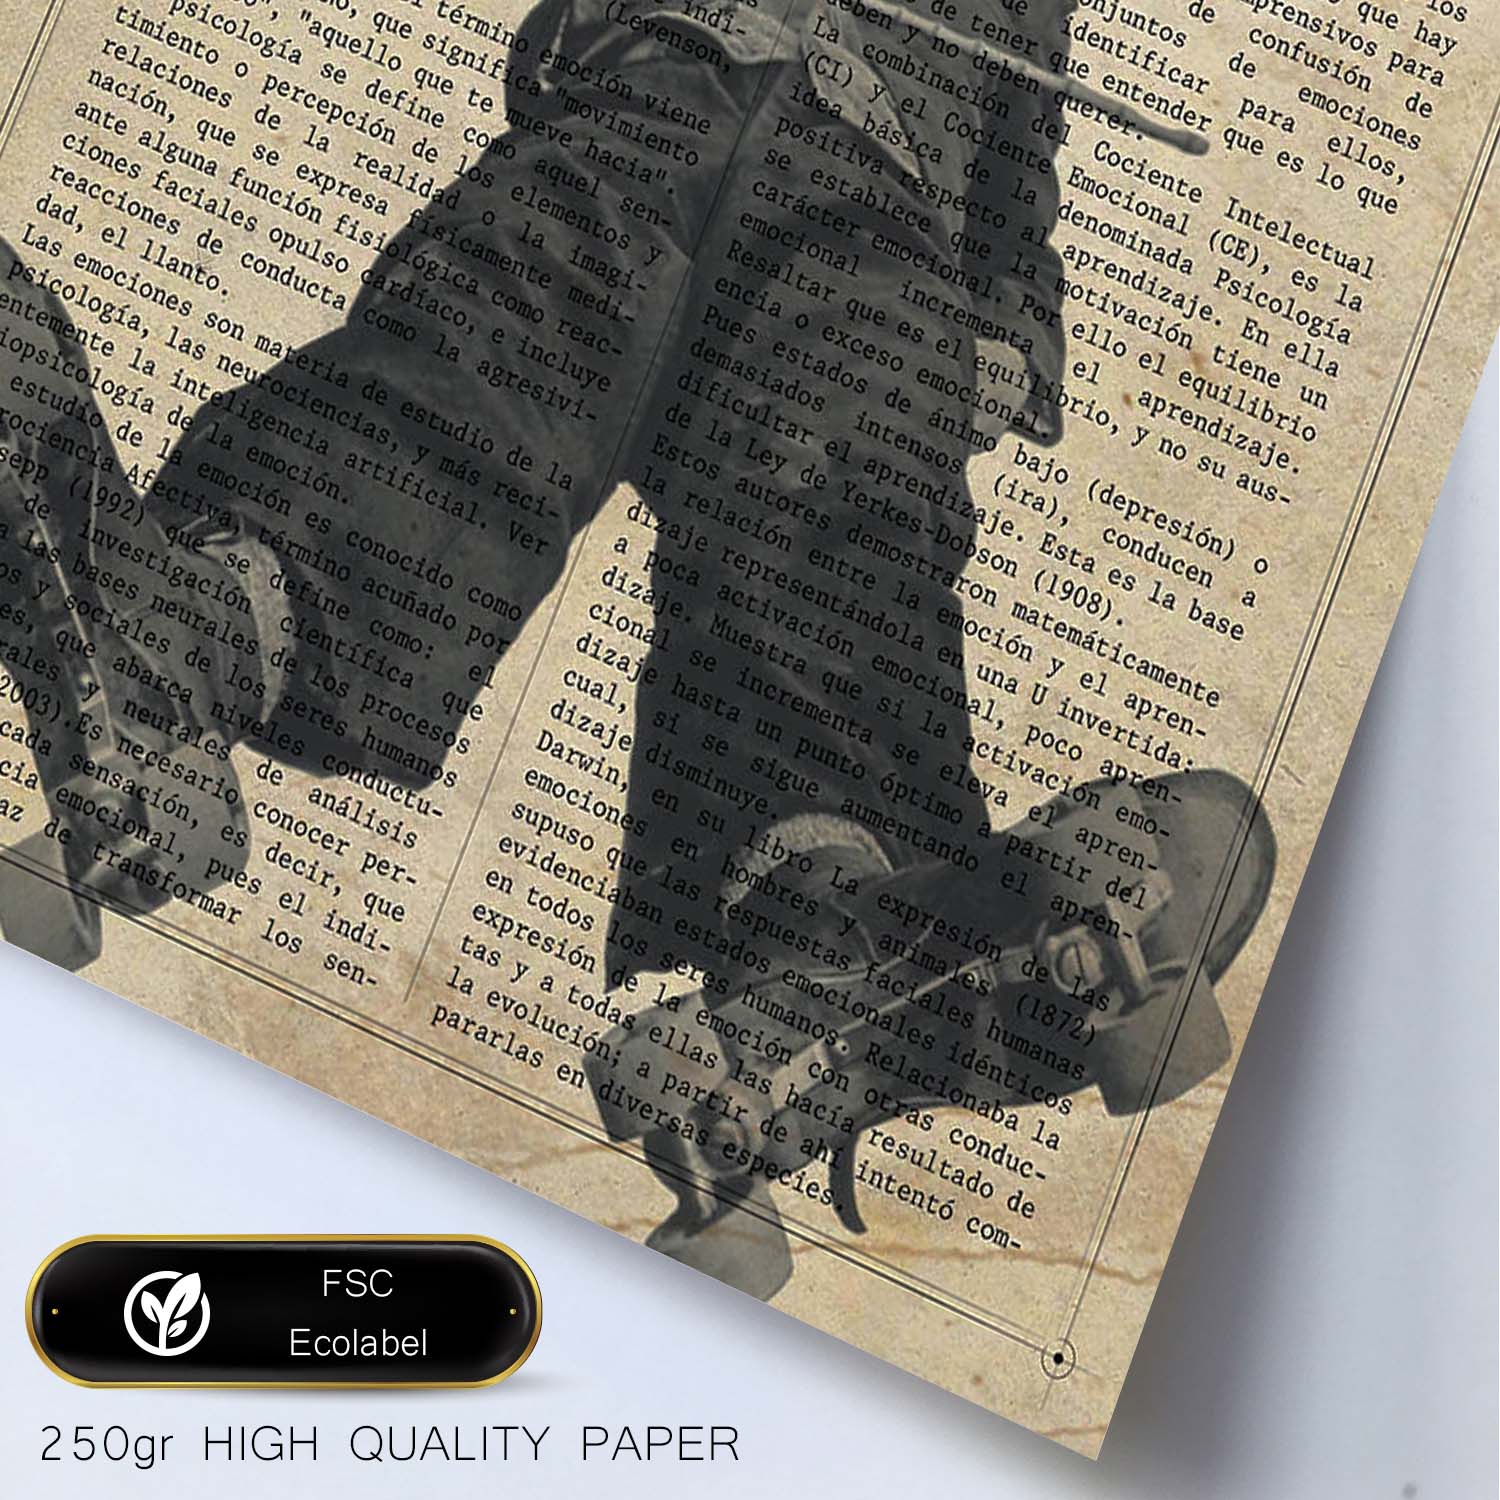 Poster de Charles Chaplin patinando. Láminas de personajes importantes. Posters de músicos, actores, inventores, exploradores, ...-Artwork-Nacnic-Nacnic Estudio SL